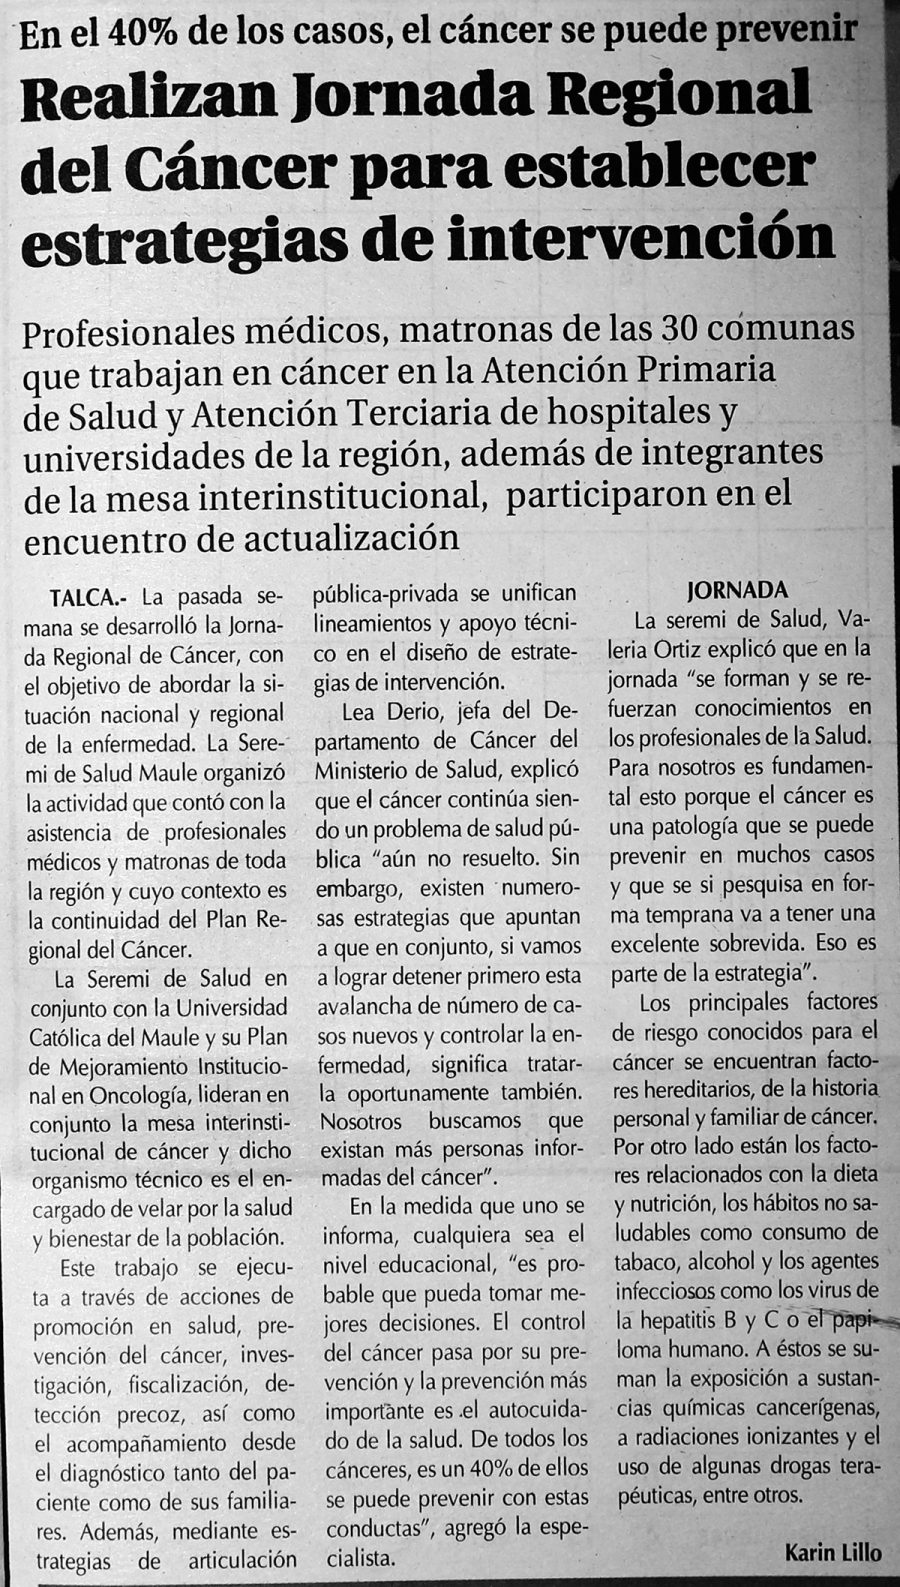 19 de junio en Diario El Centro: “Realizan Jornada Regional del Cáncer para establecer estrategias de intervención”